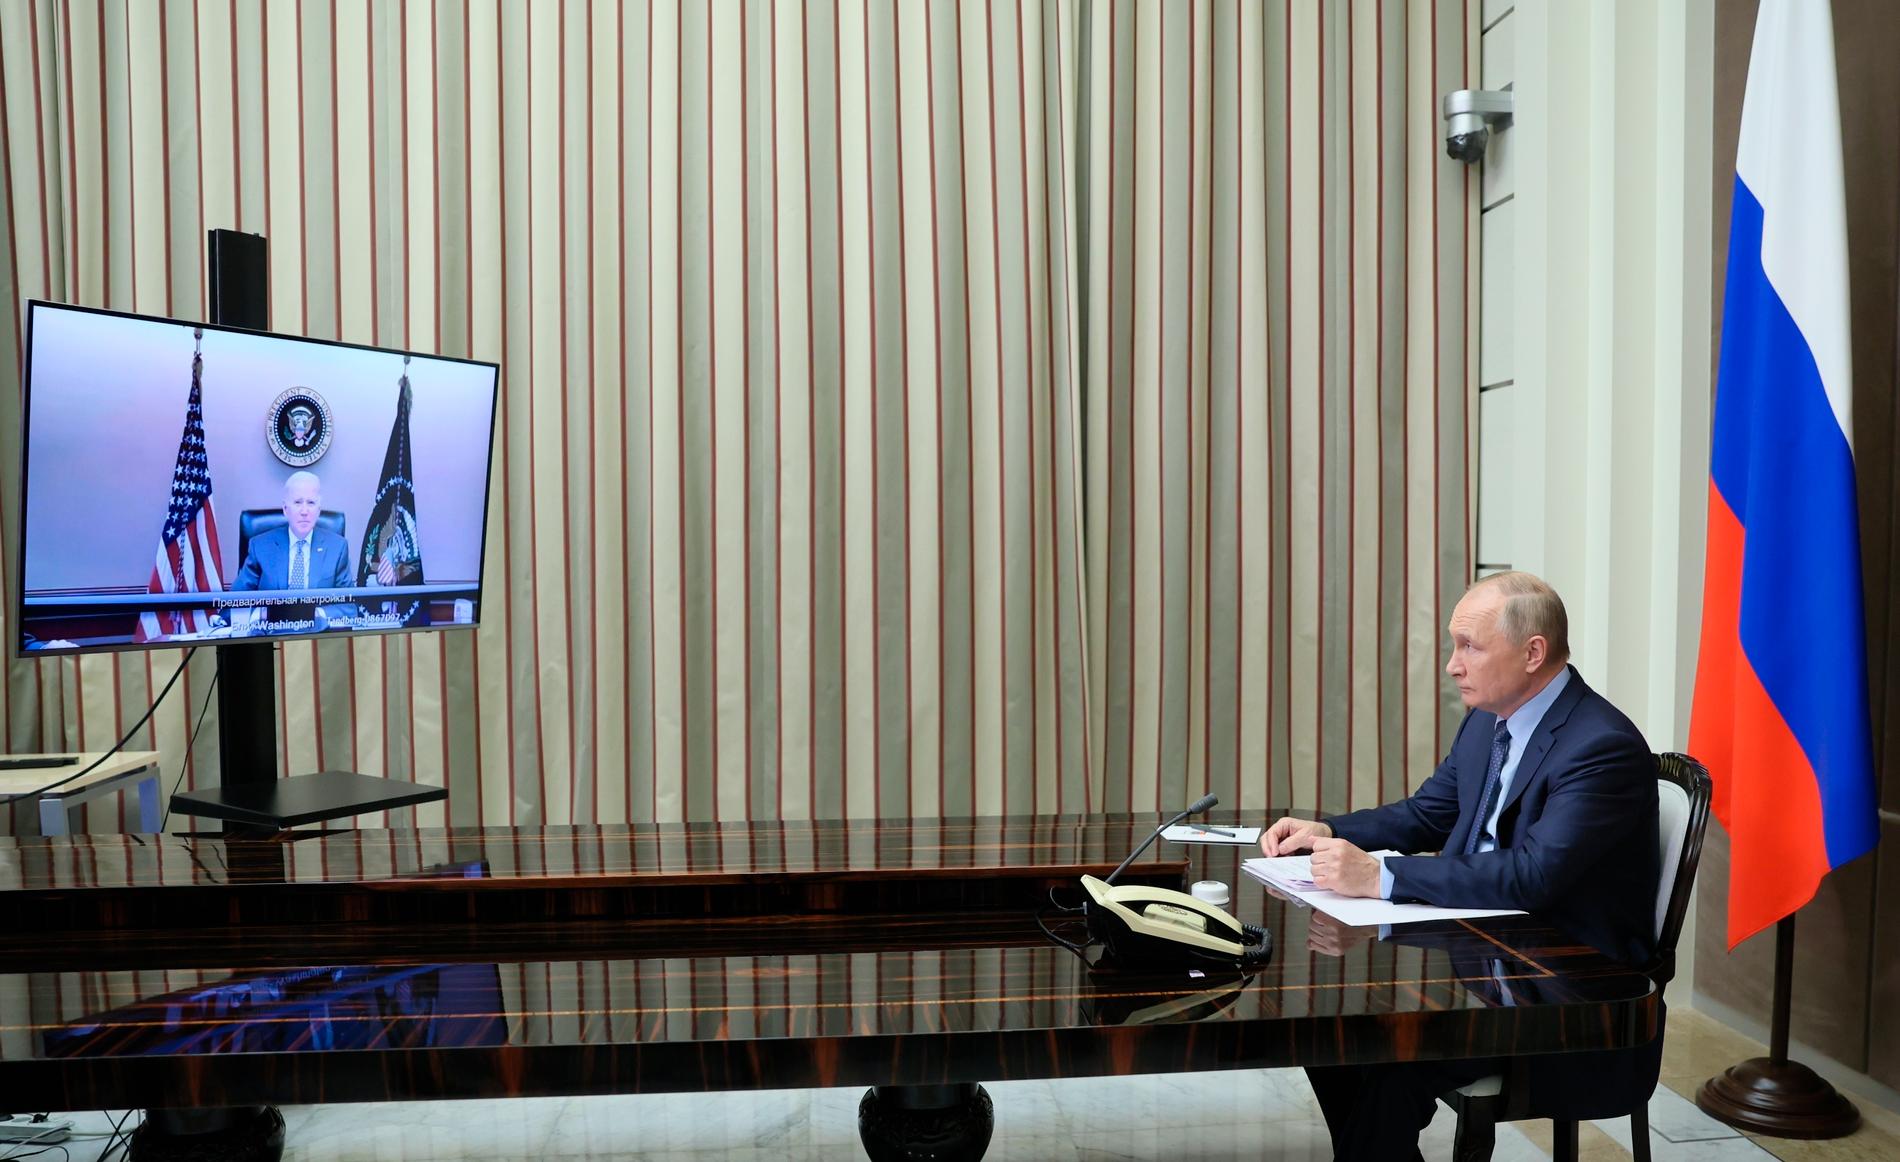 Senaste samtalet mellan Biden, på skärmen, och Putin, till höger, var i december 2021.